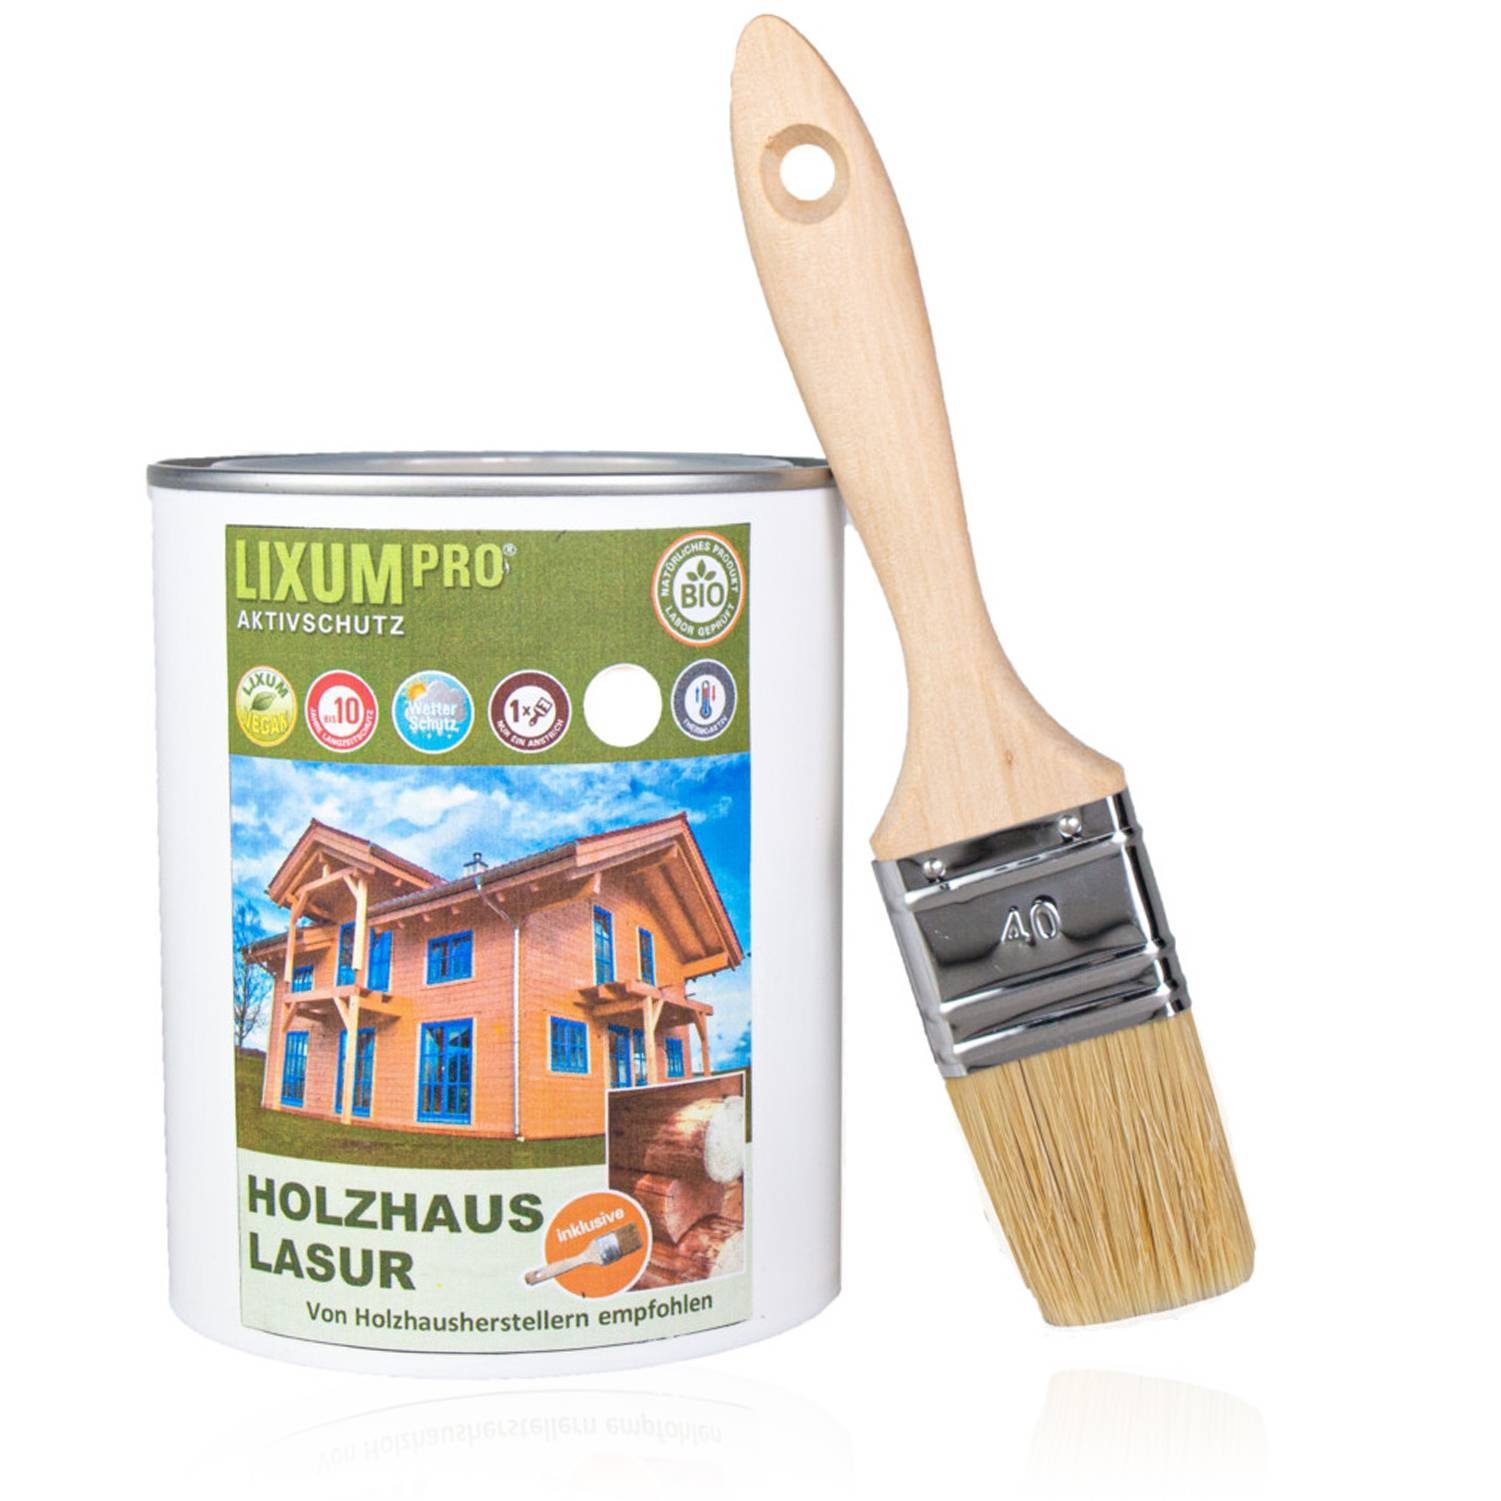 LIXUM Holzschutzlasur LIXUM 100% Biologische Holzhaus & Blockhaus Lasur - Wetterschutz für Holzhäuser farblos